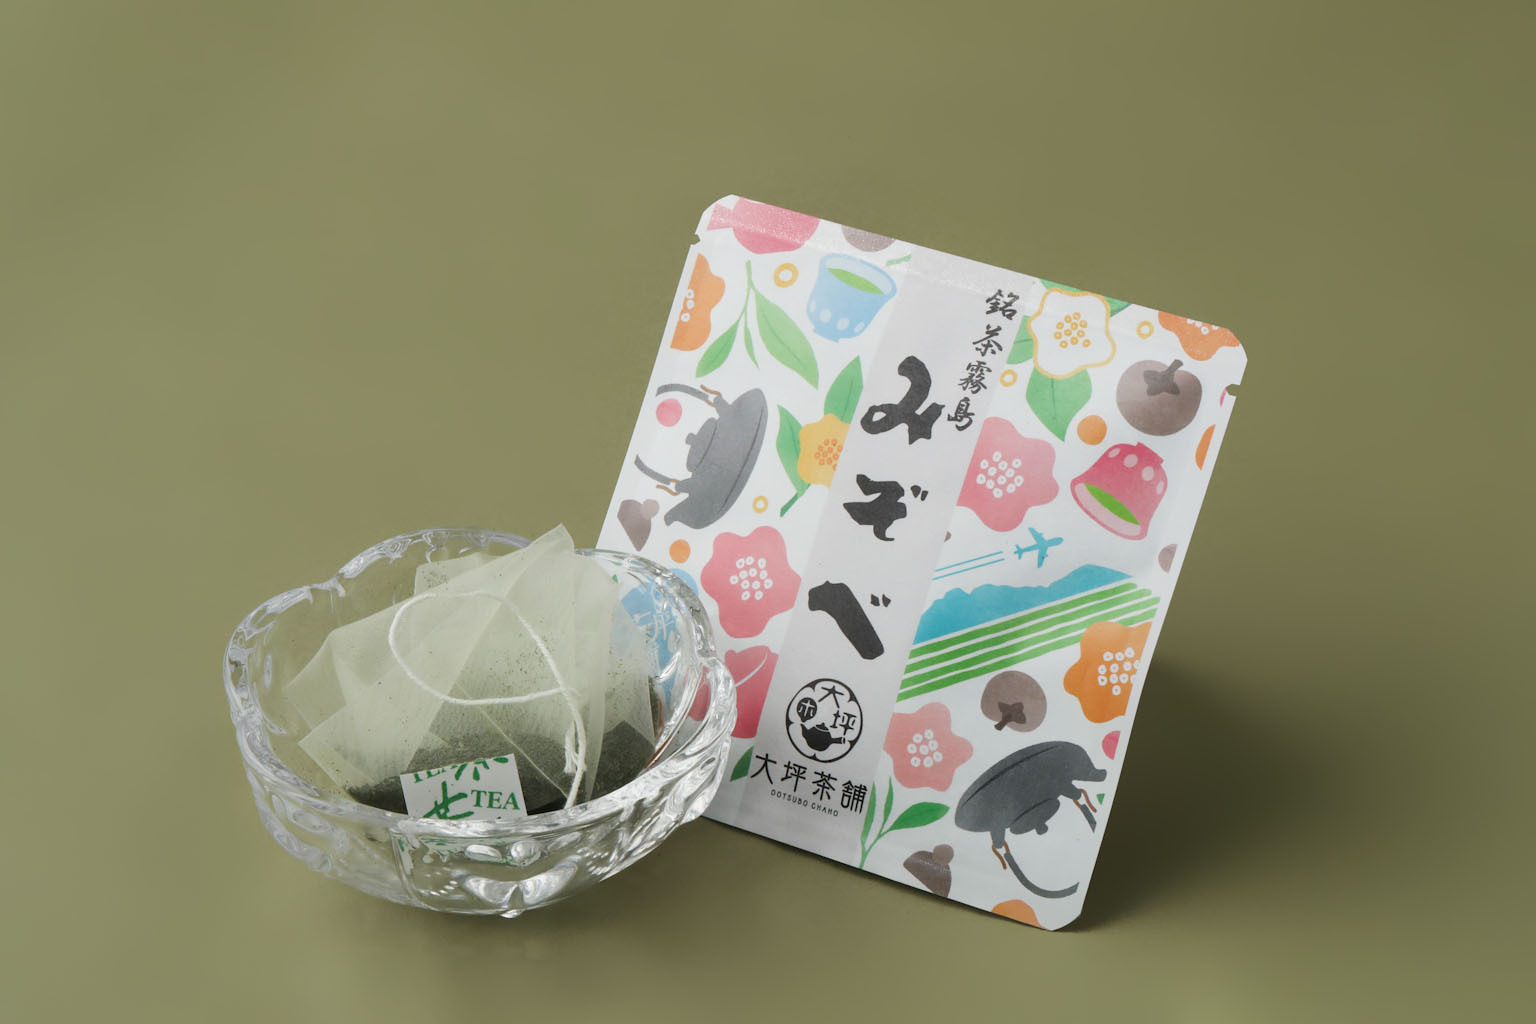 霧島みぞべ 煎茶テーパック 9g(3g×3個)